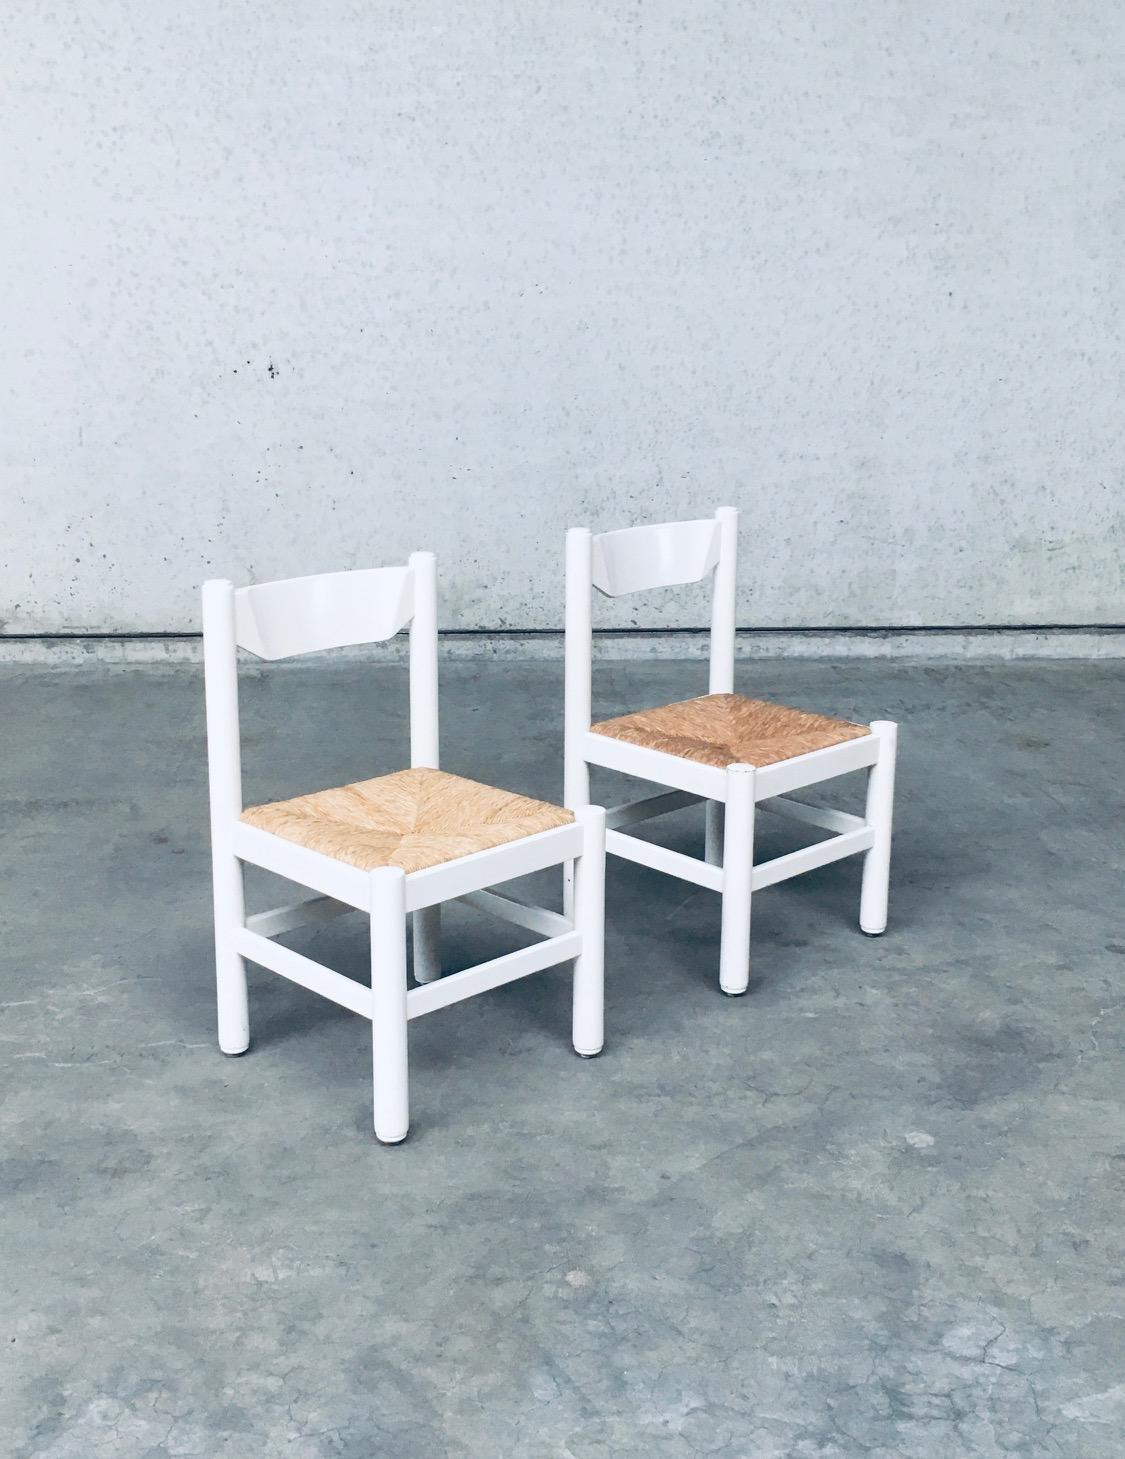 Vintage Midcentury Modern Italian Design 'Carimate' Model Side Chair set. Hergestellt in Italien, 1970er Jahre. Carimate-Modellstühle nach dem Vorbild von Vico Magistretti für Cassina. Weiß lackierter Buchenholzrahmen mit Sitz aus Binsen bei diesem